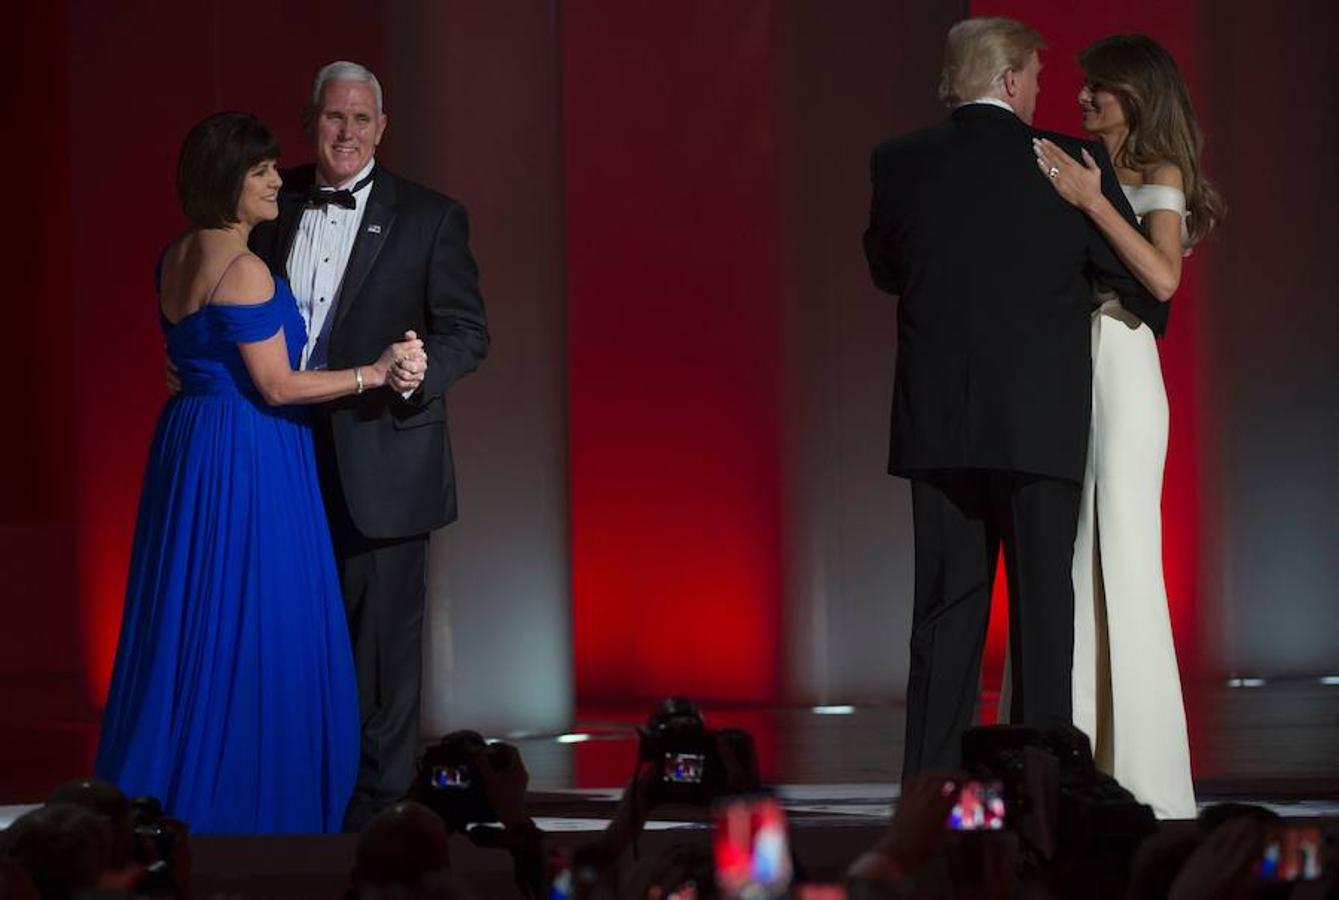 El presidente, Donald Trump, y su esposa, Melania, bailan junto con el vicepresidente, Michael Penn, y su mujer, Karen, en el Centro de Convenciones de Washington.